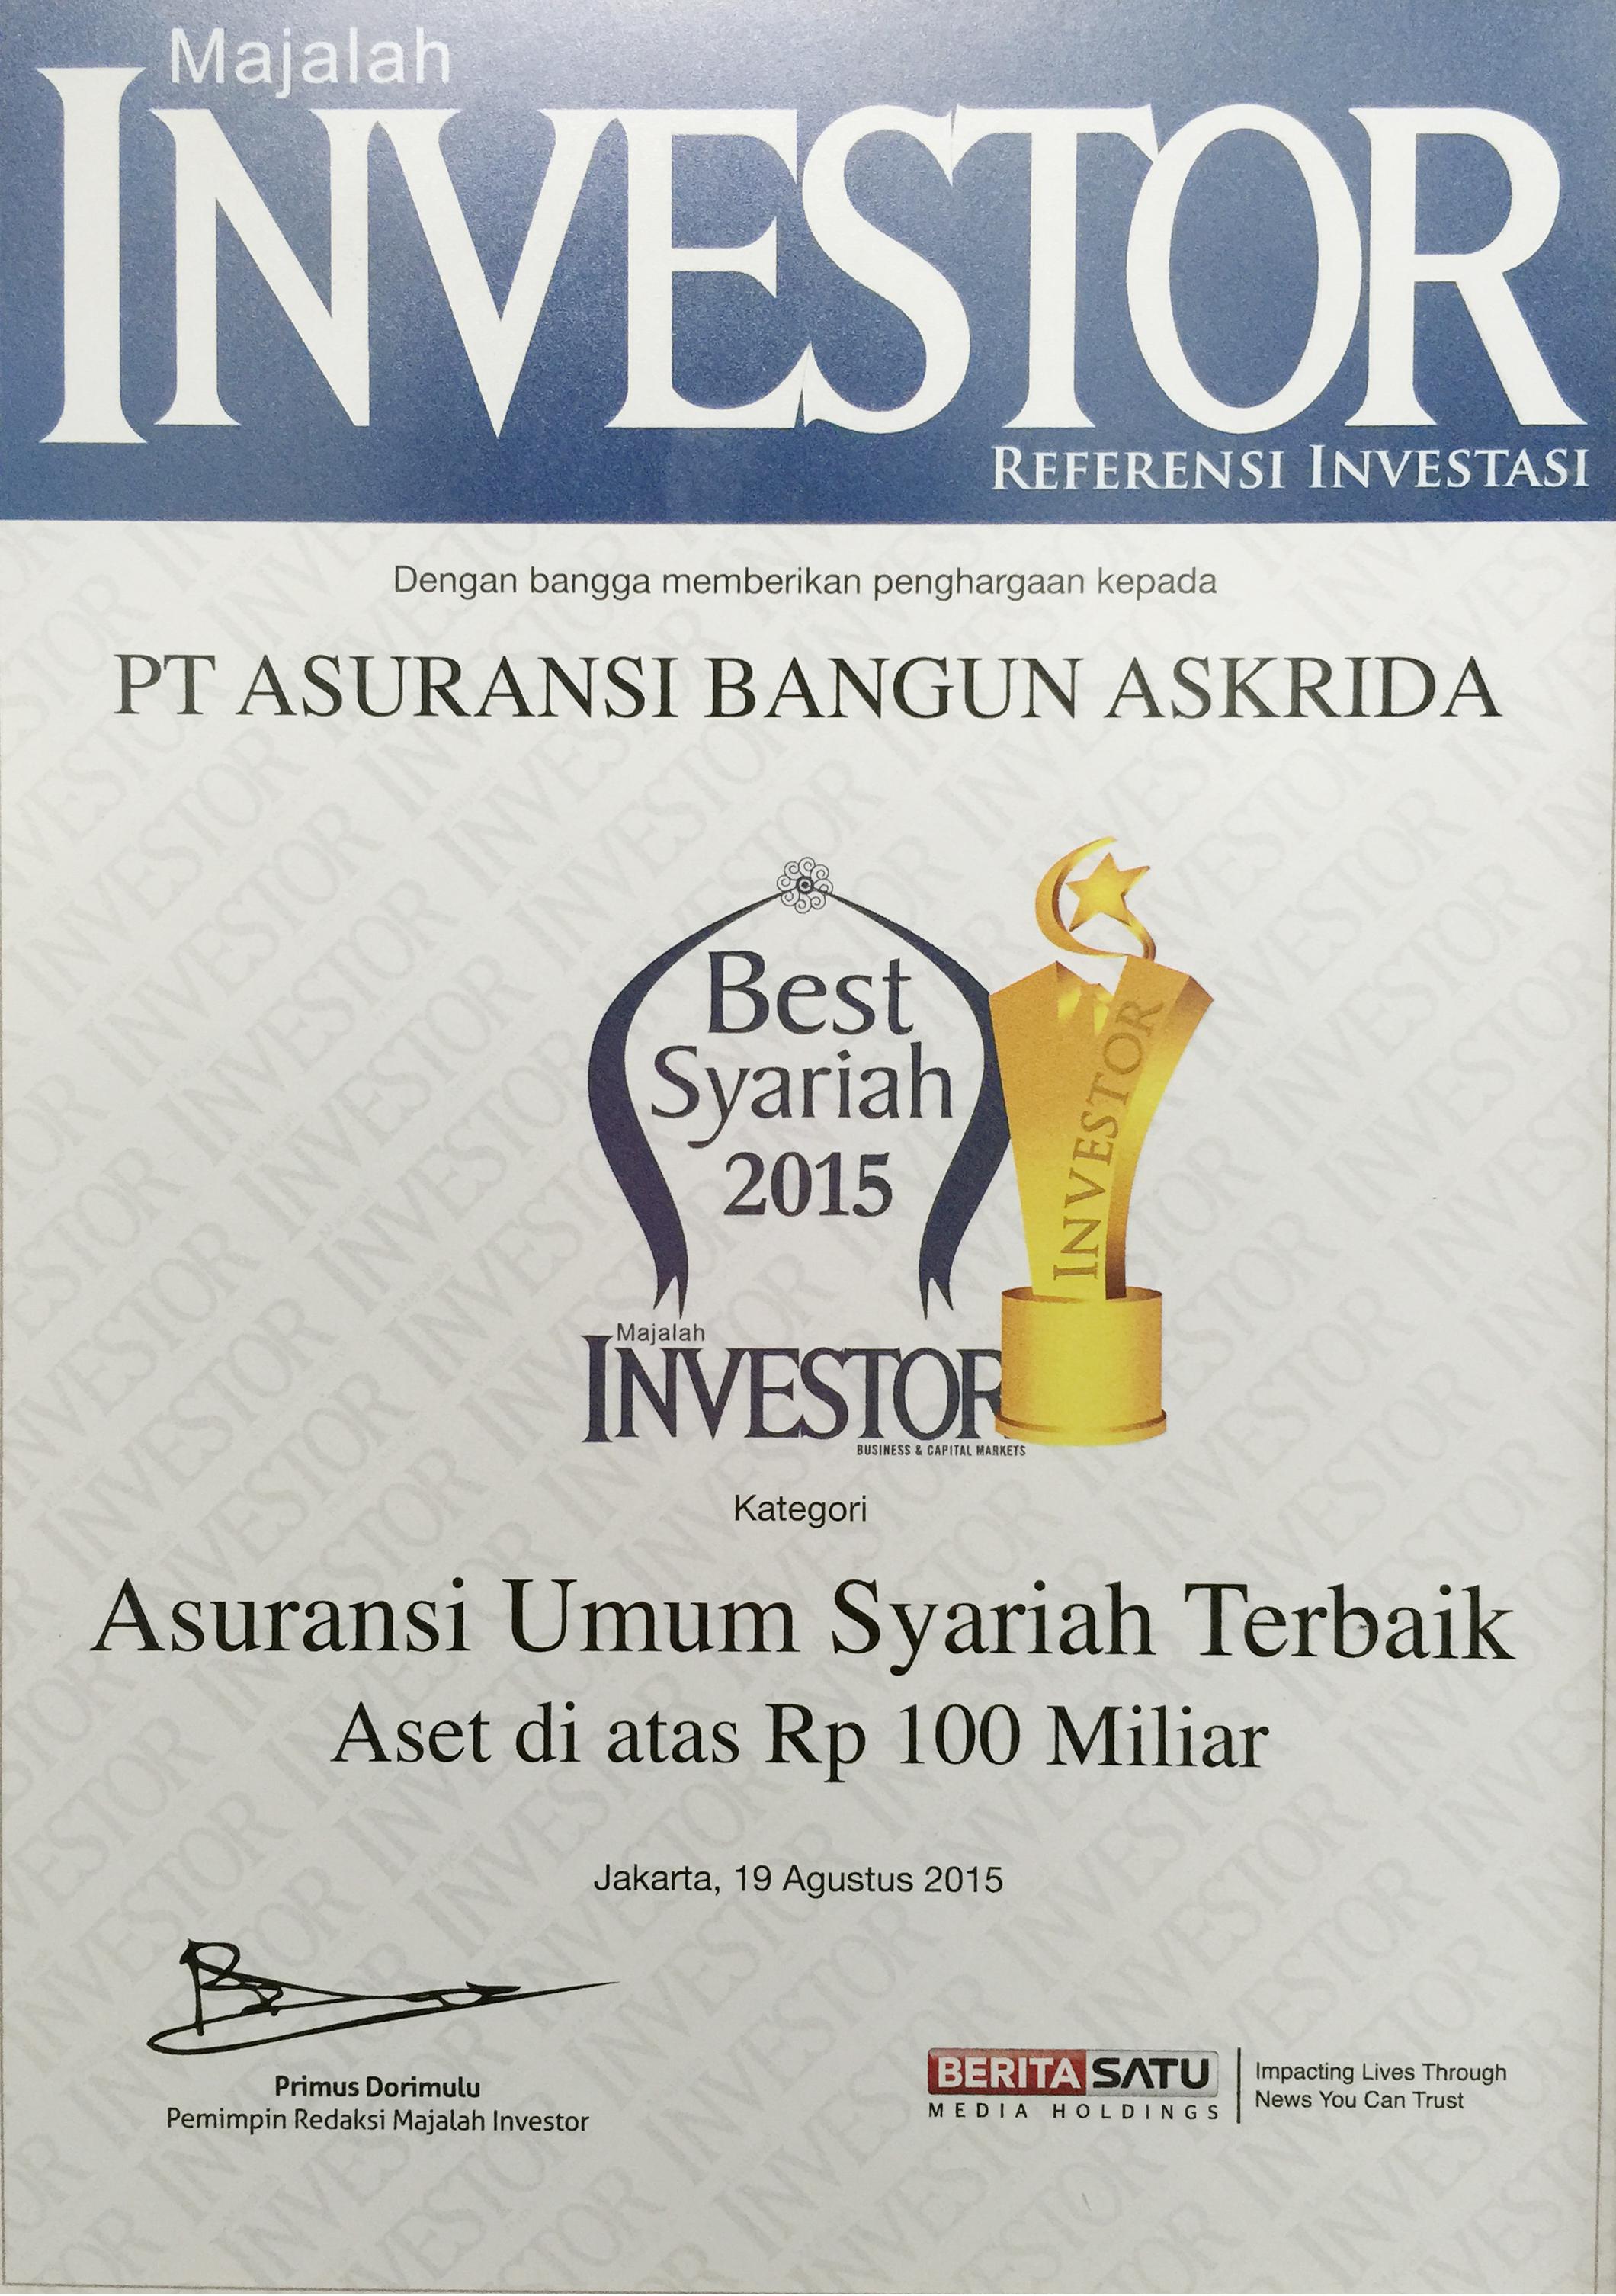 PENGHARGAAN ASURANSI UMUM SYARIAH TERBAIK 2015 (INVESTOR)